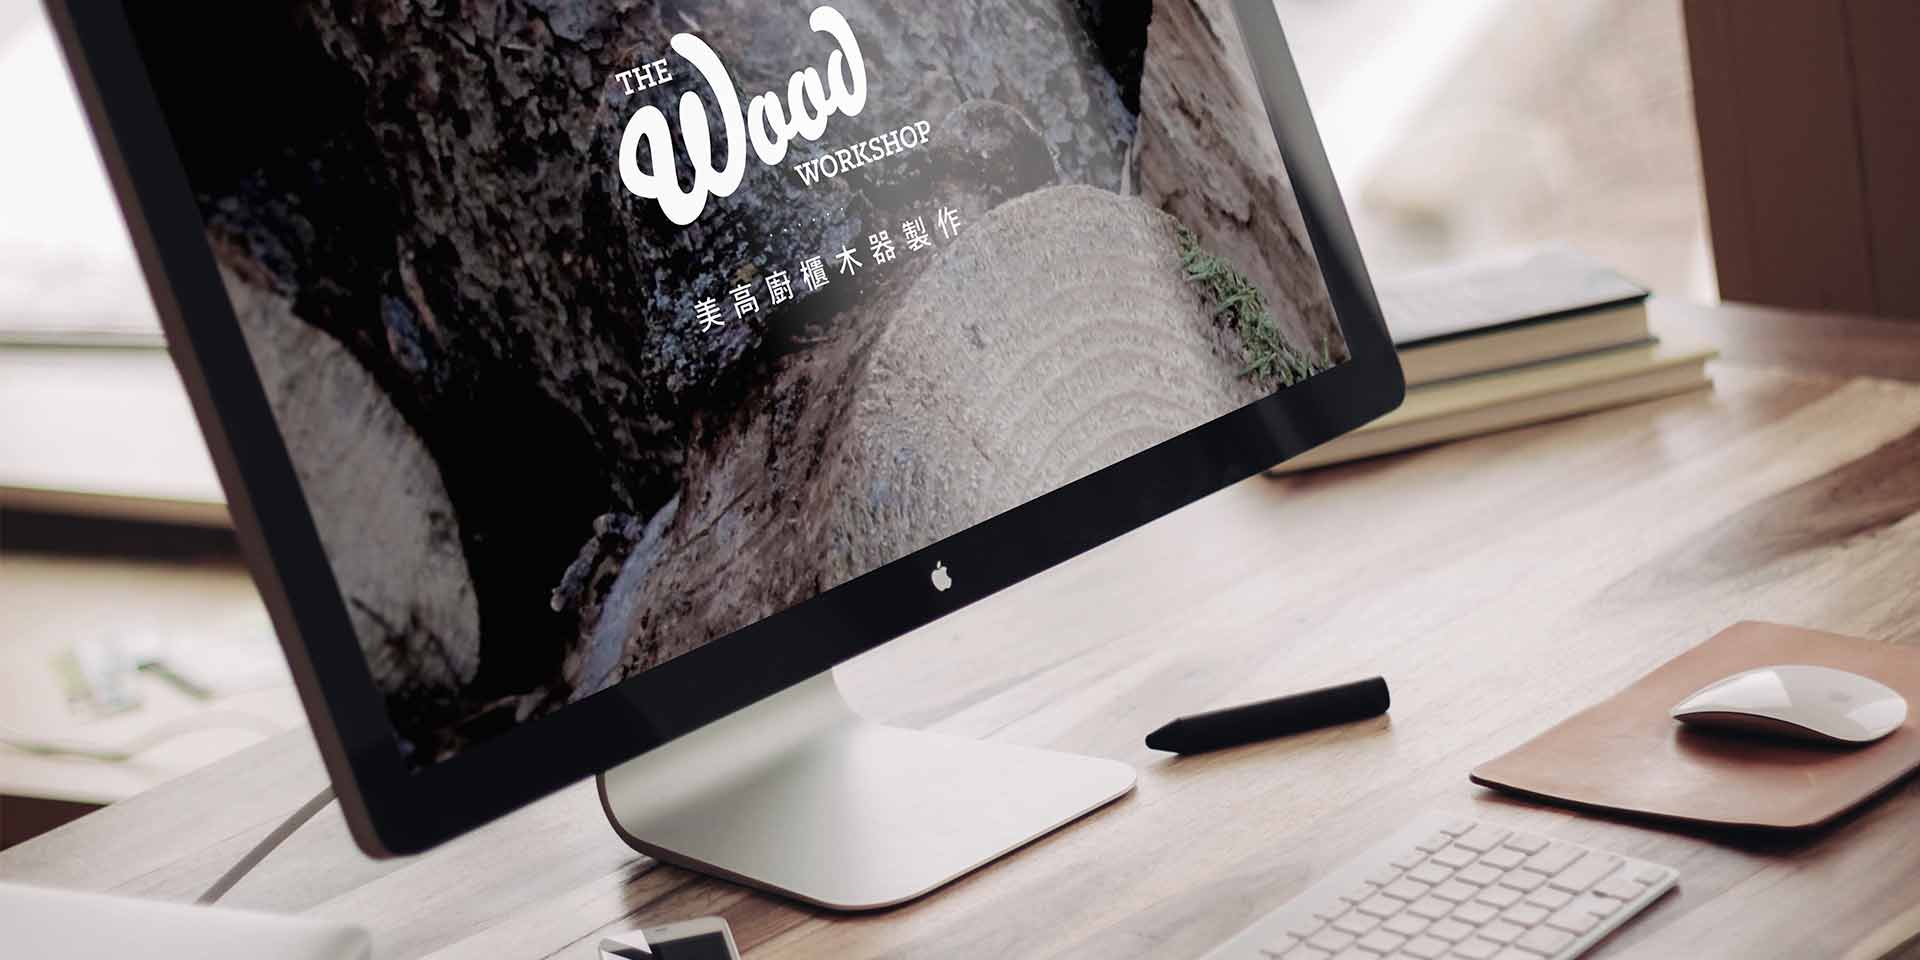 The Wood Workshop desktop website: homepage